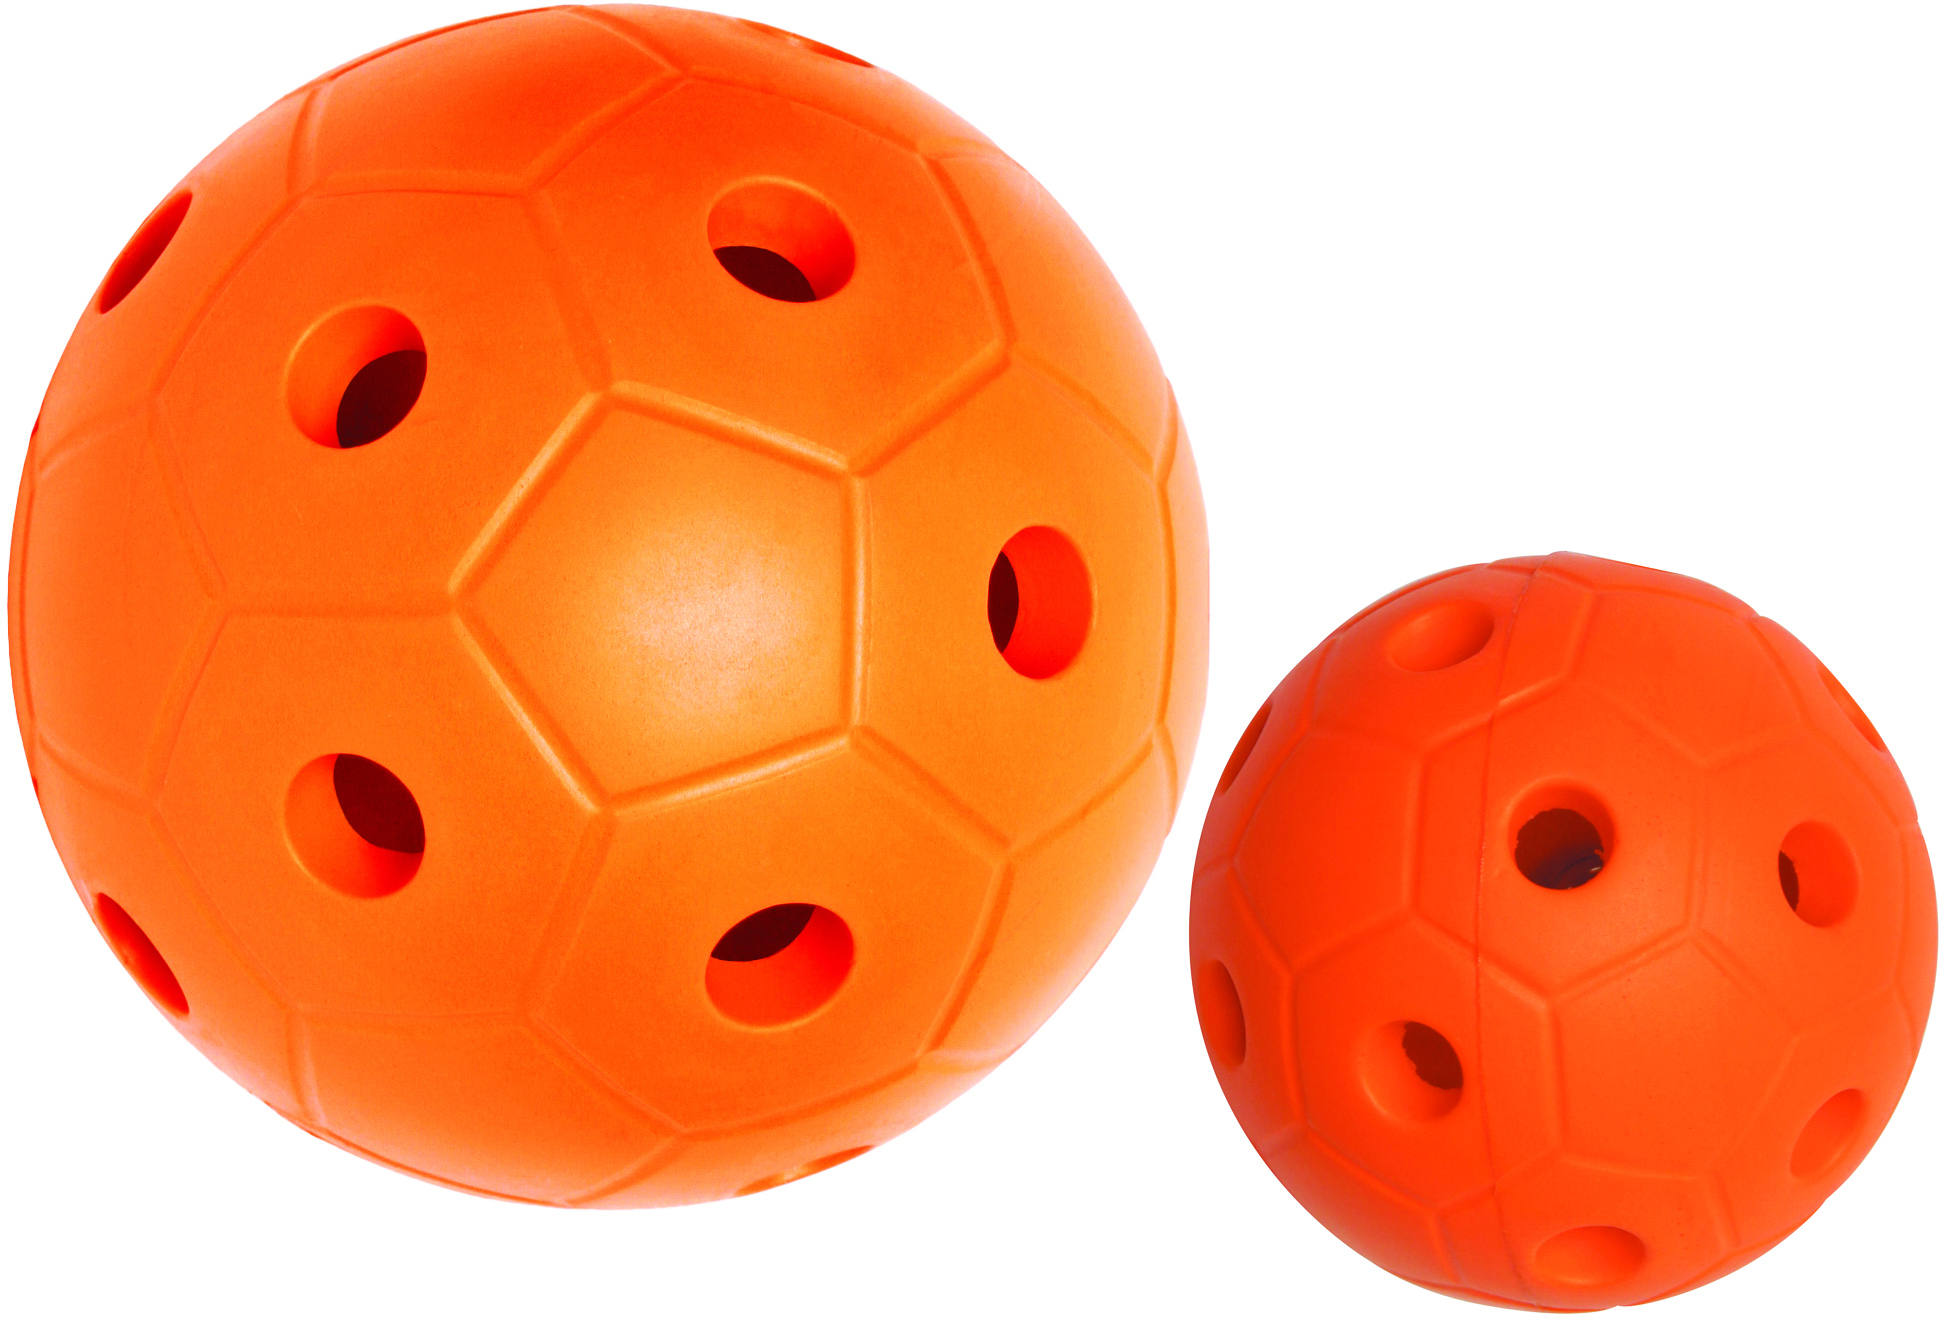 Ballon sonore à trous pour jeu de torball handisport